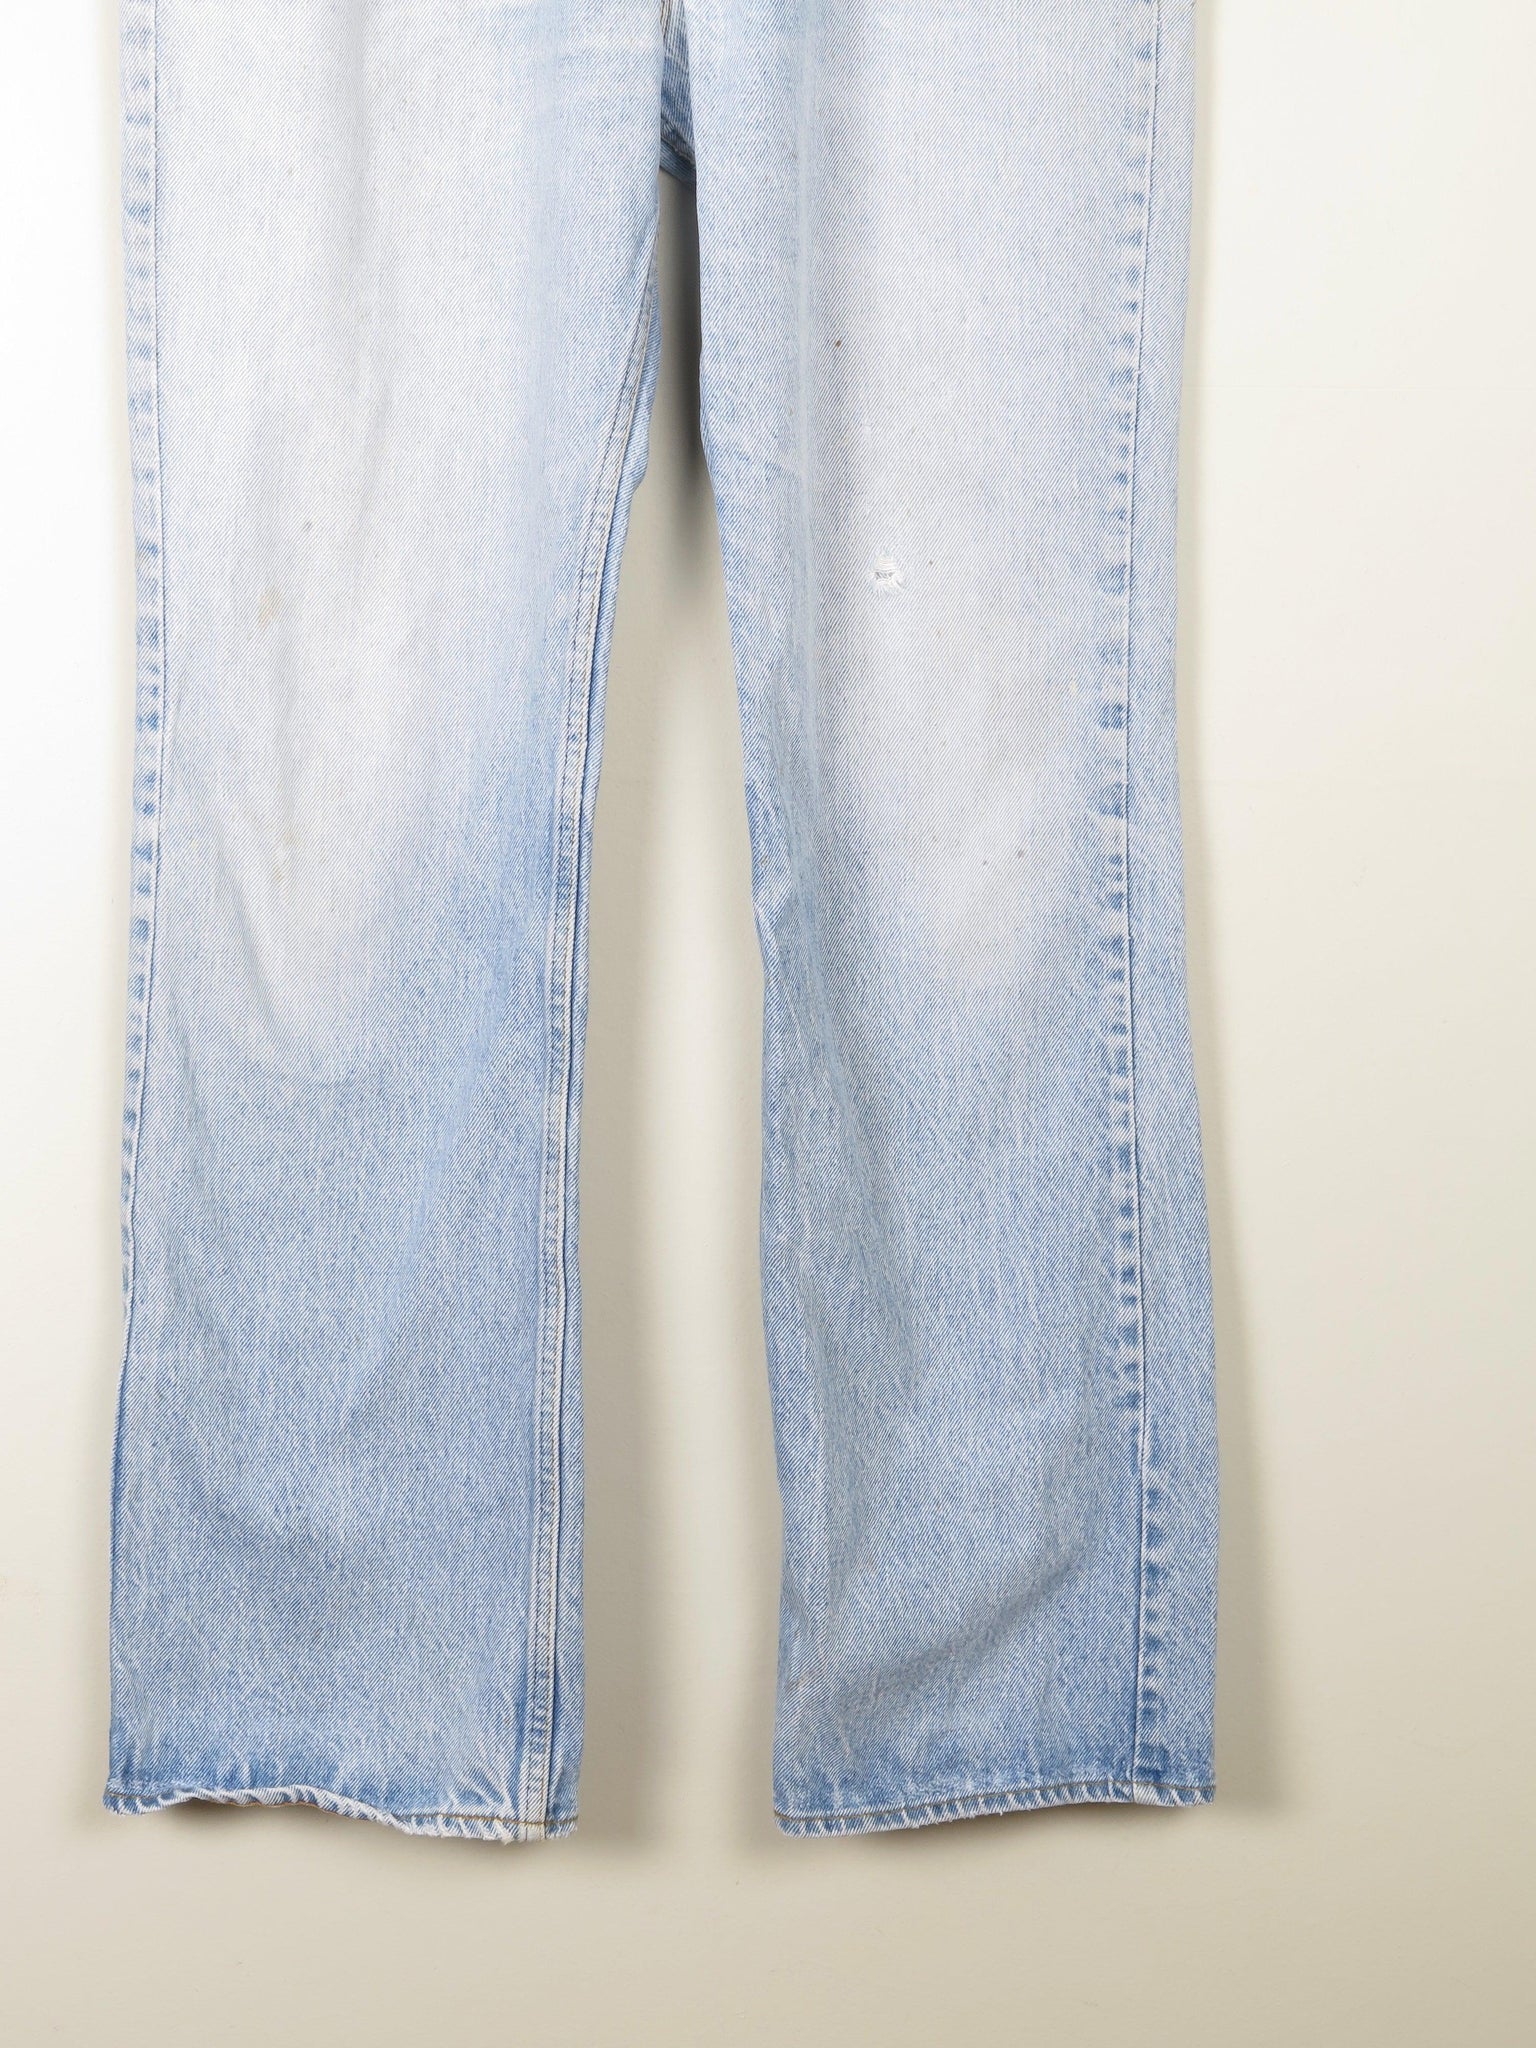 Vintage Blue Orange Tab Levis Jeans 36W 33L - The Harlequin